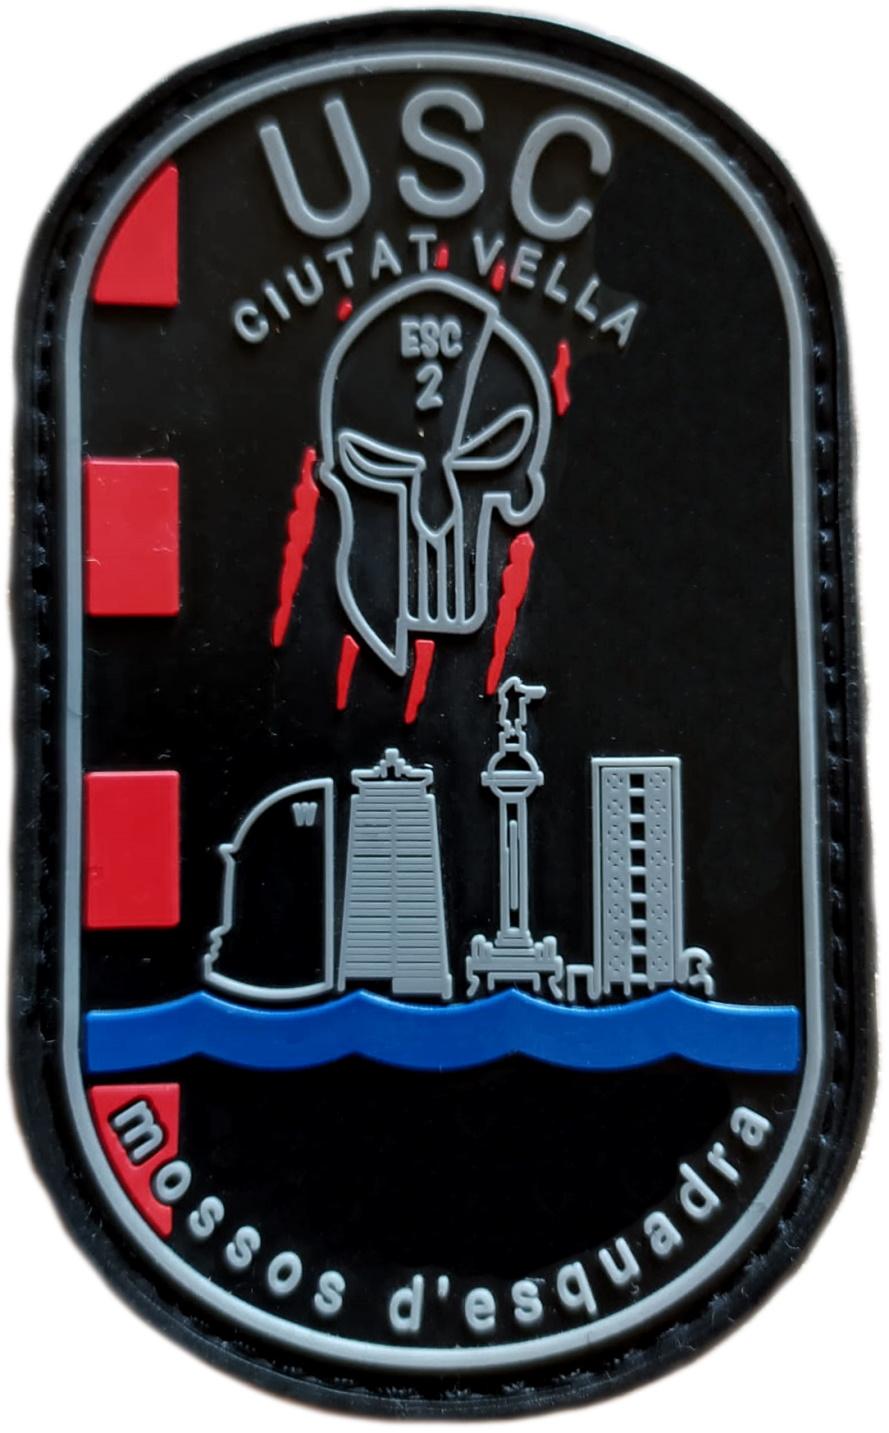 Policía Mossos d´esquadra USC Ciutat vella parche insignia emblema distintivo